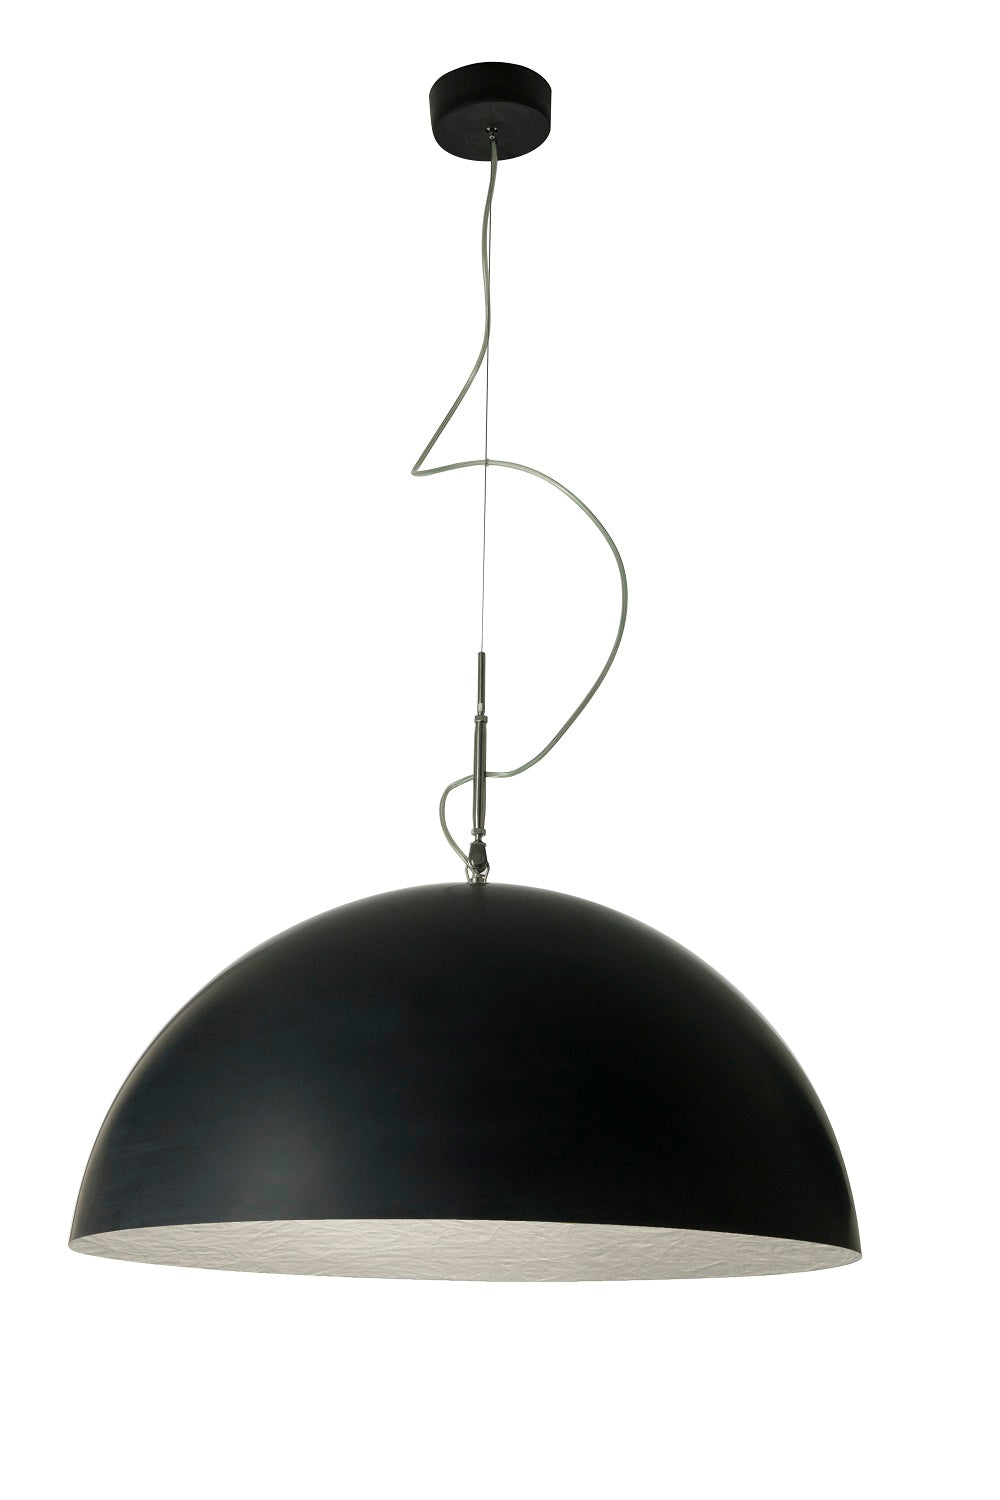 In-es.artdesign Mezza Luna 1 Ceiling Pendant Light